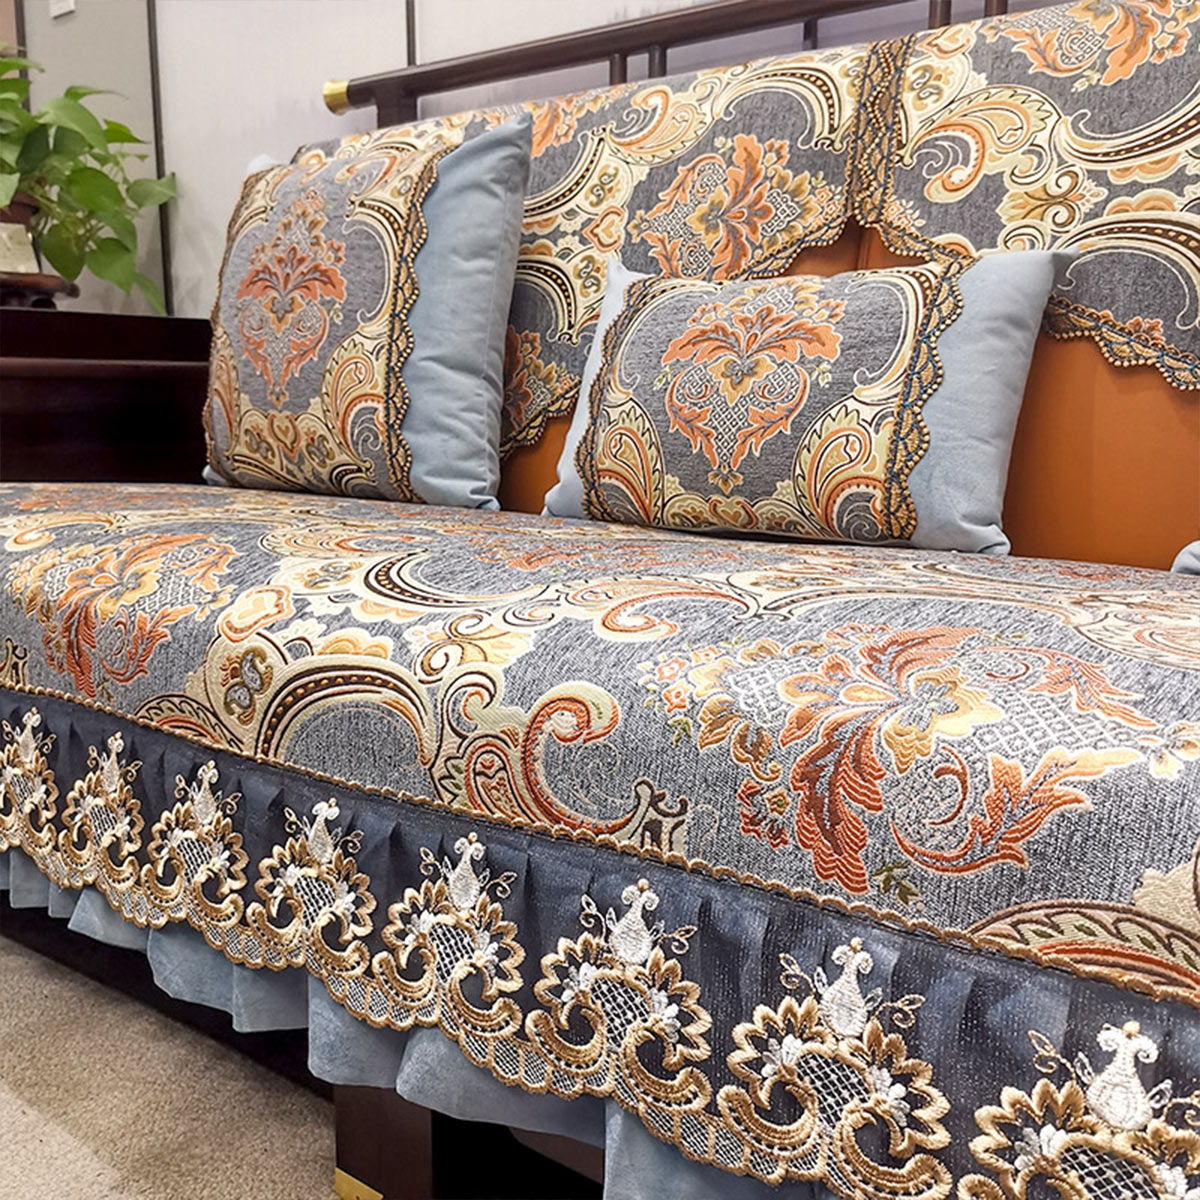 高档新中式沙发垫套罩盖巾四季通用防滑布艺定做123组合客厅实木